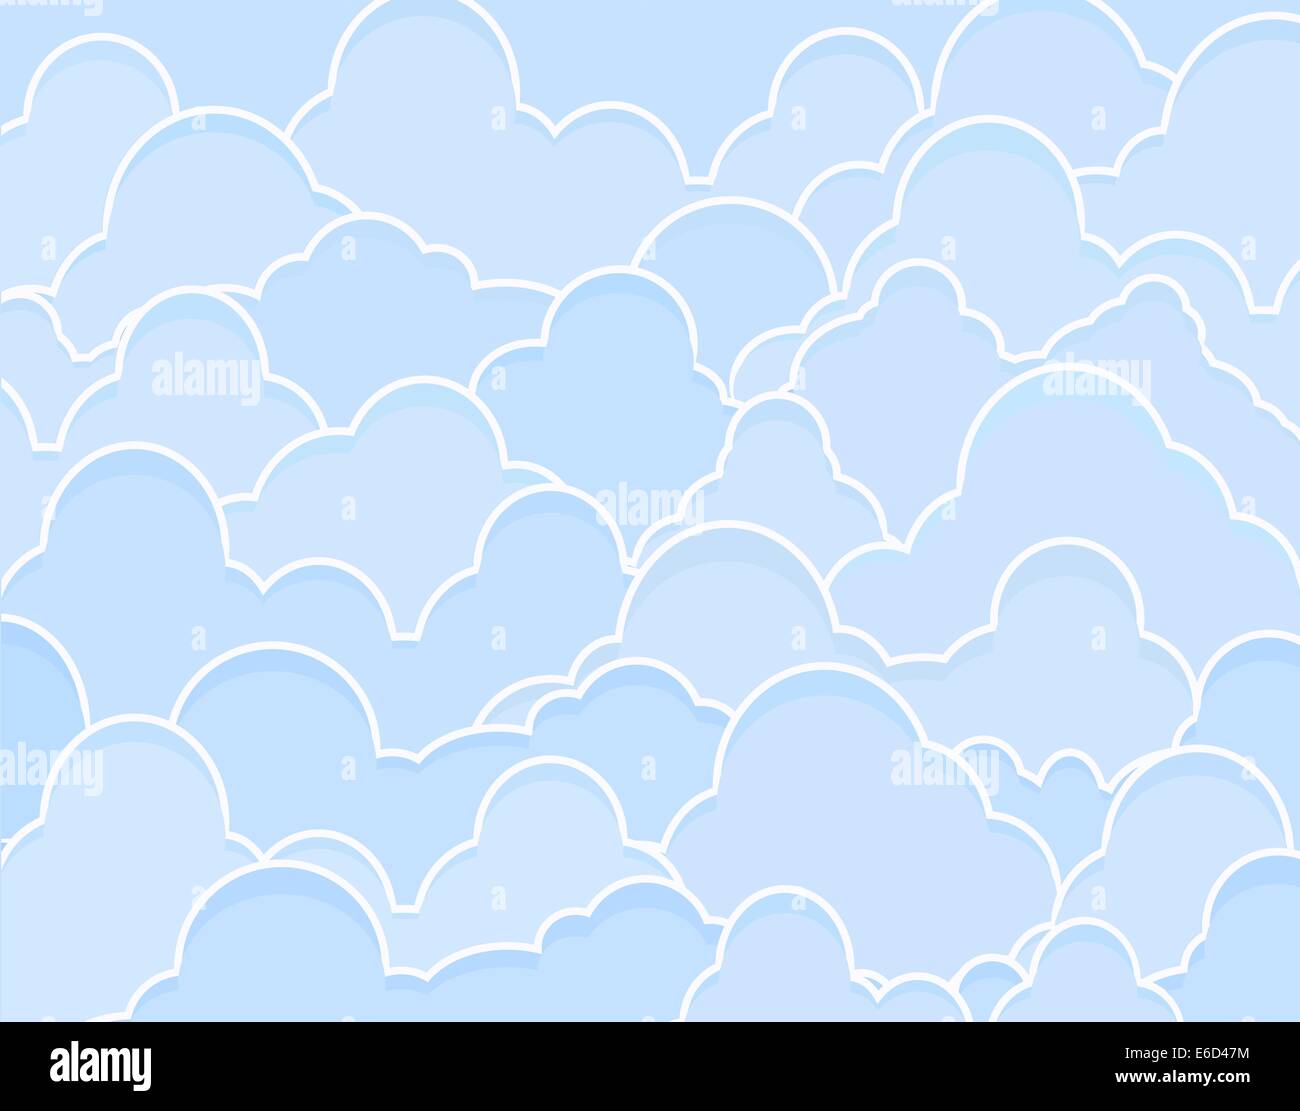 Hintergrund-editierbare Vektor-Illustration der blauen Cumulus-Wolken Stock Vektor